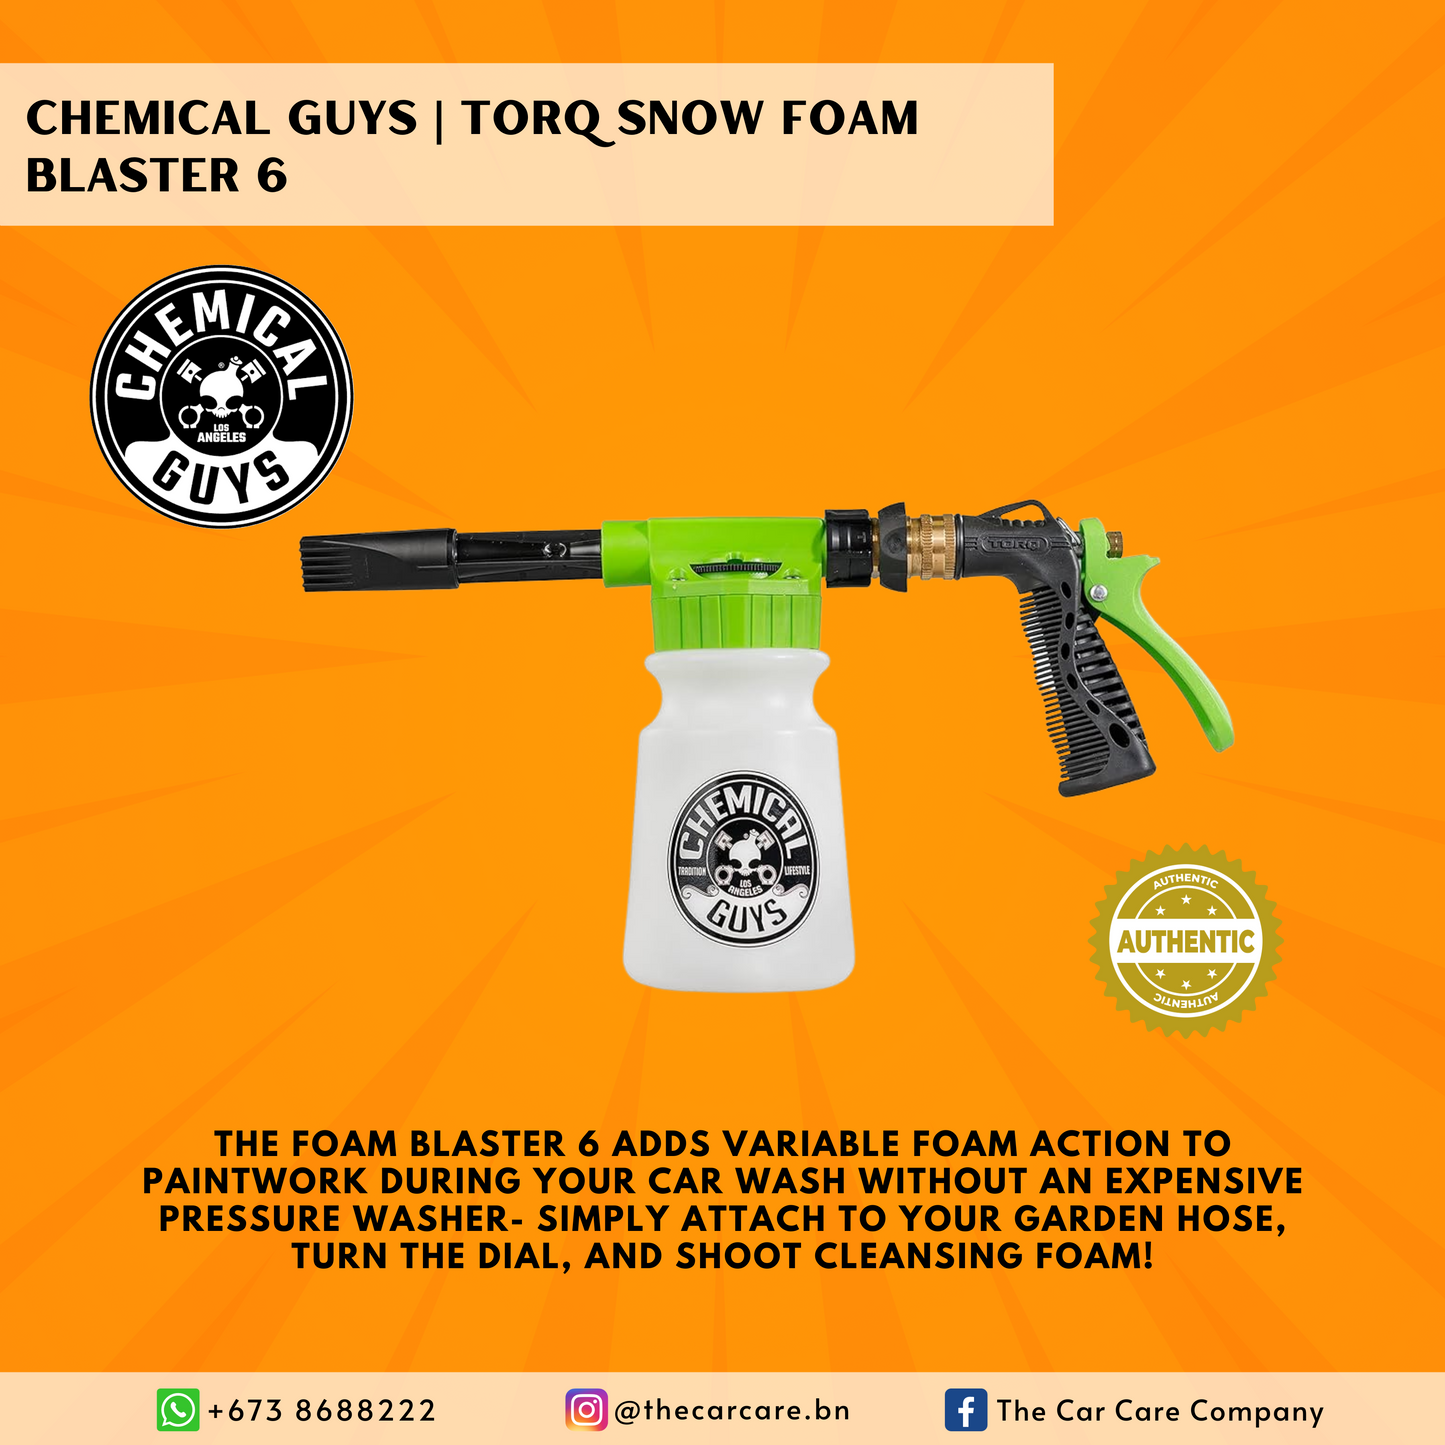 TORQ Snow Foam Blaster 6